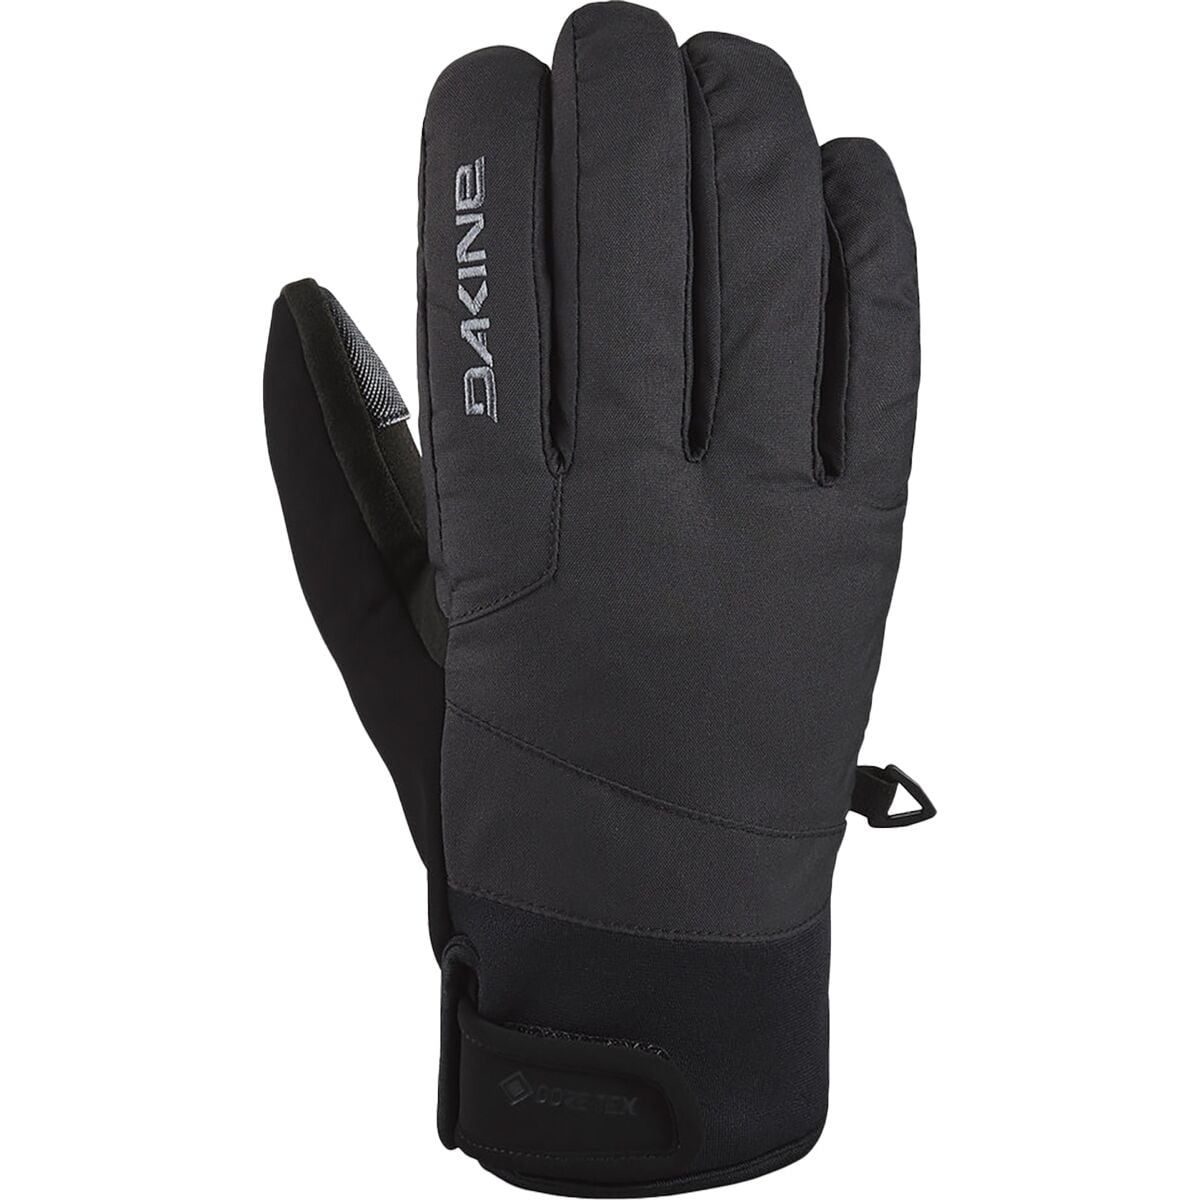 DAKINE Impreza GORE-TEX Glove - Men's Black